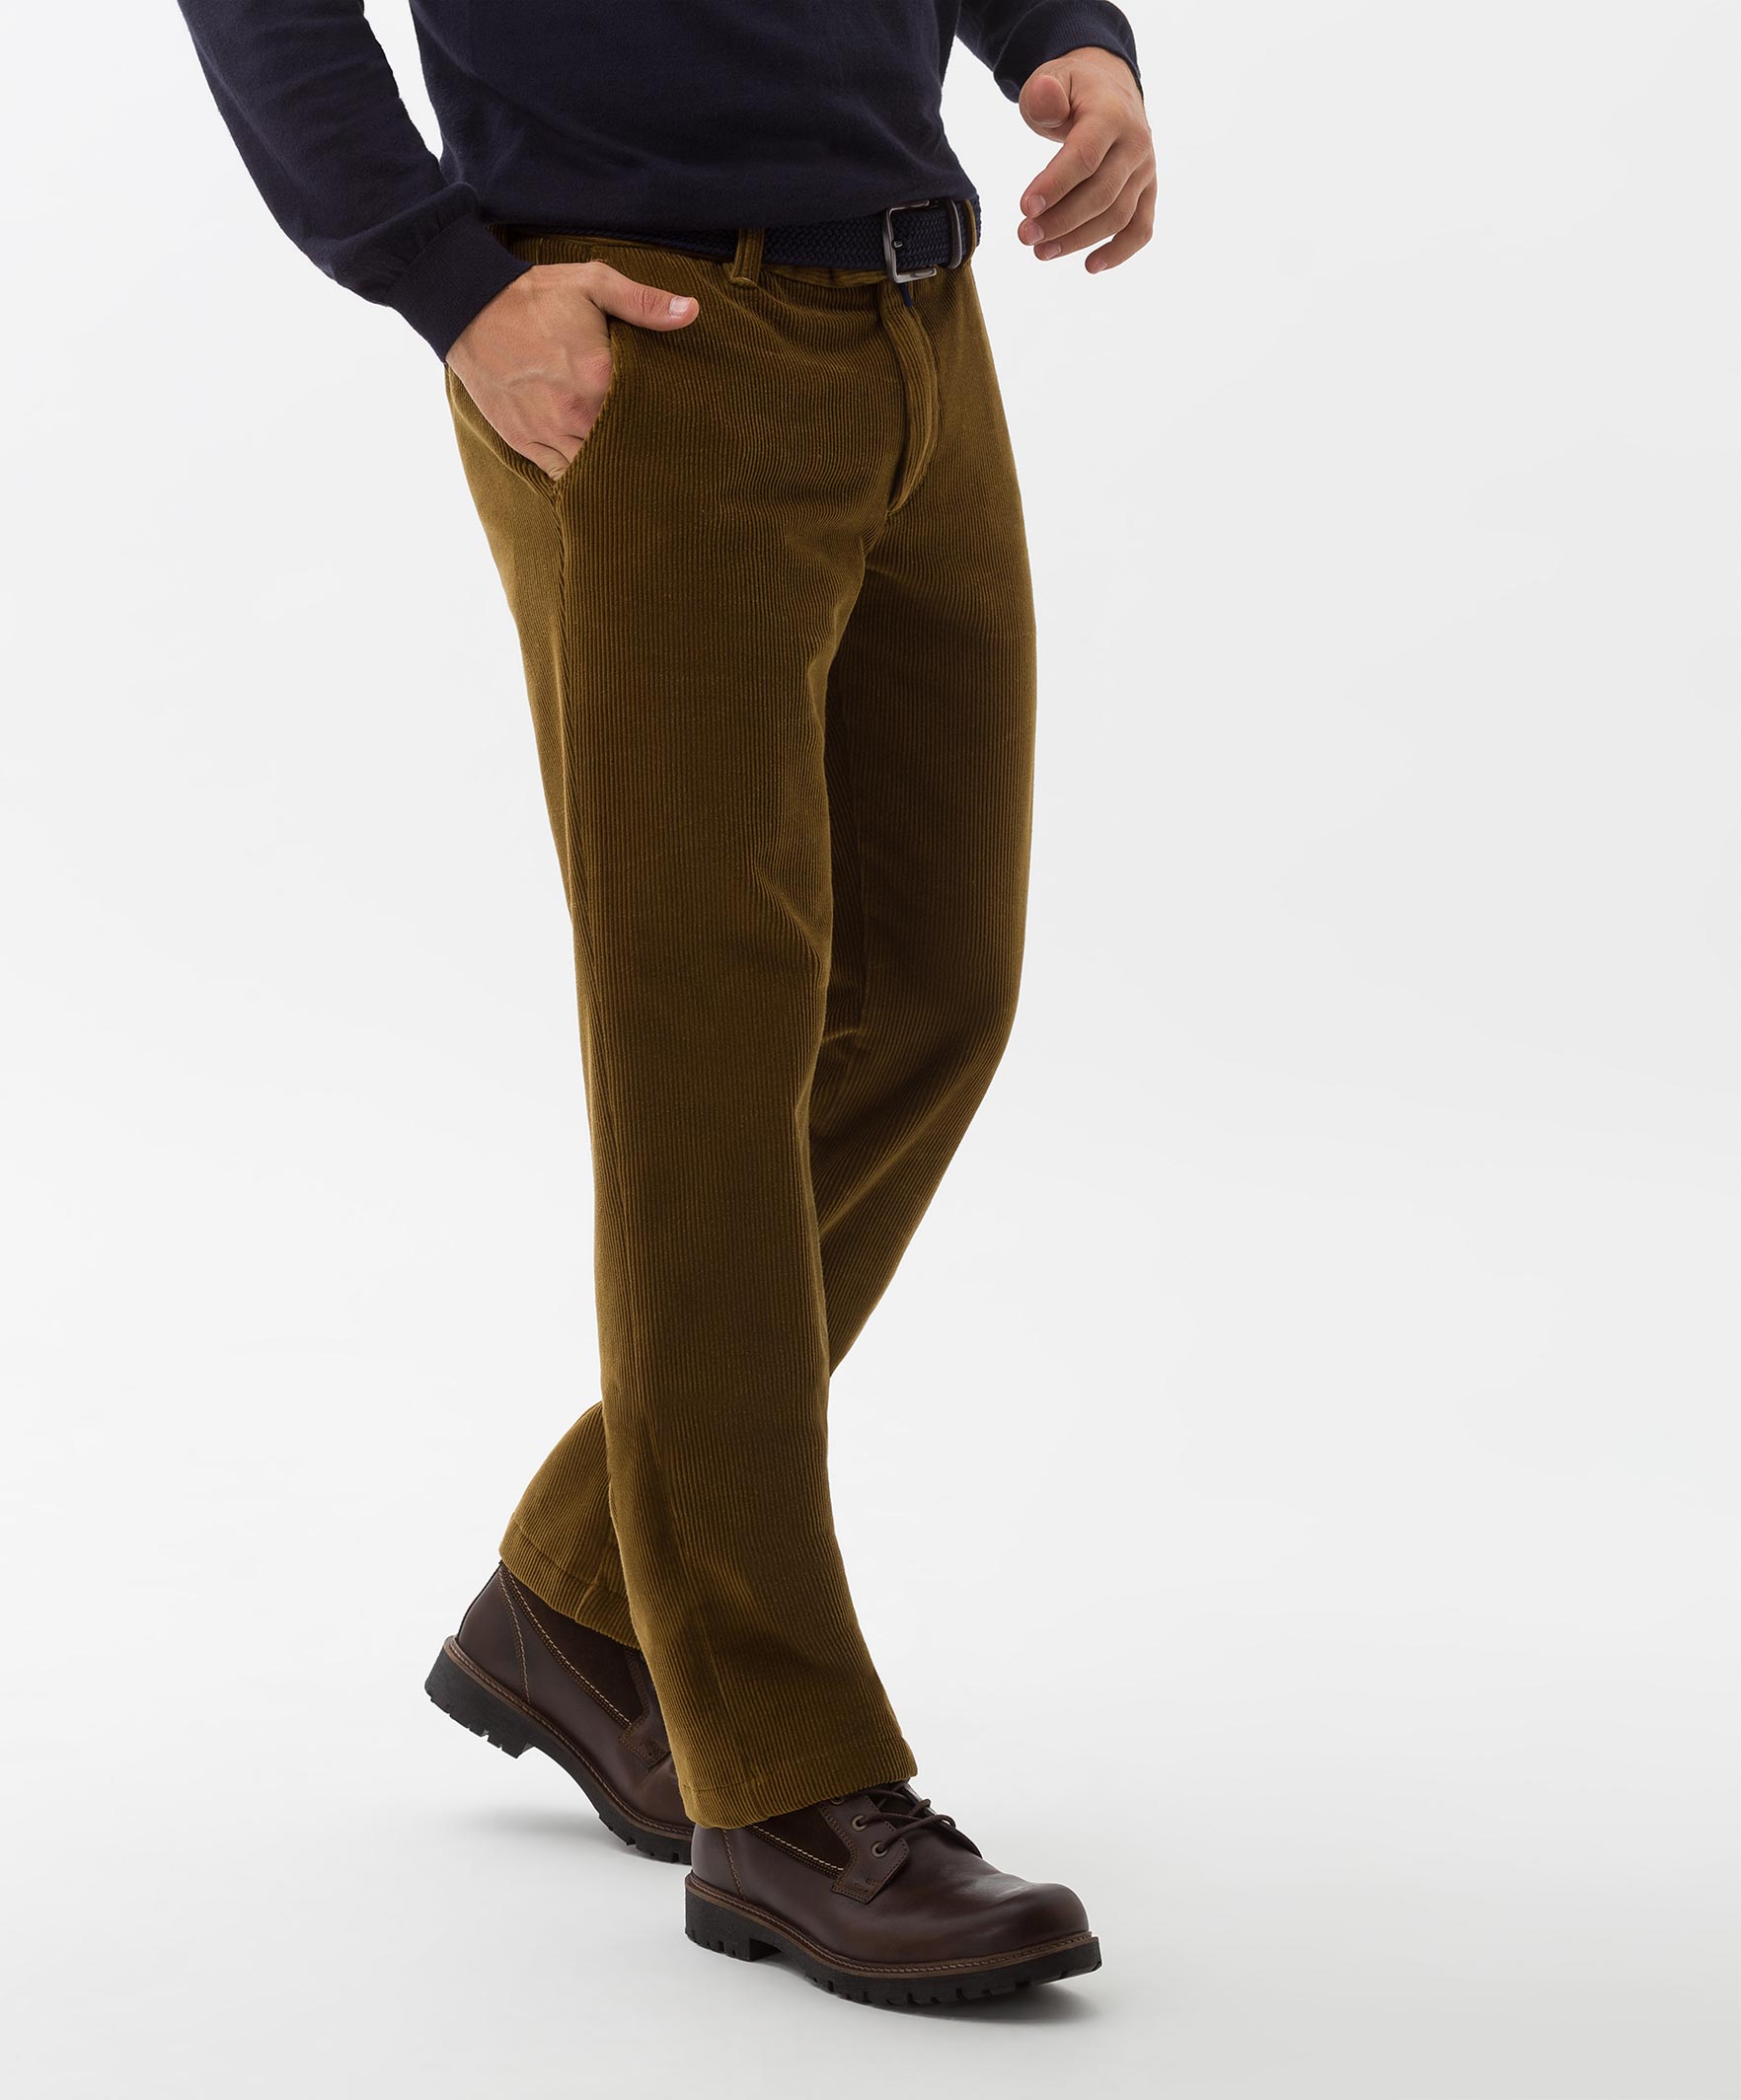 Brax Jim 316 Corduroy Corduroy Trouser Camel | Jan Rozing Men's Fashion